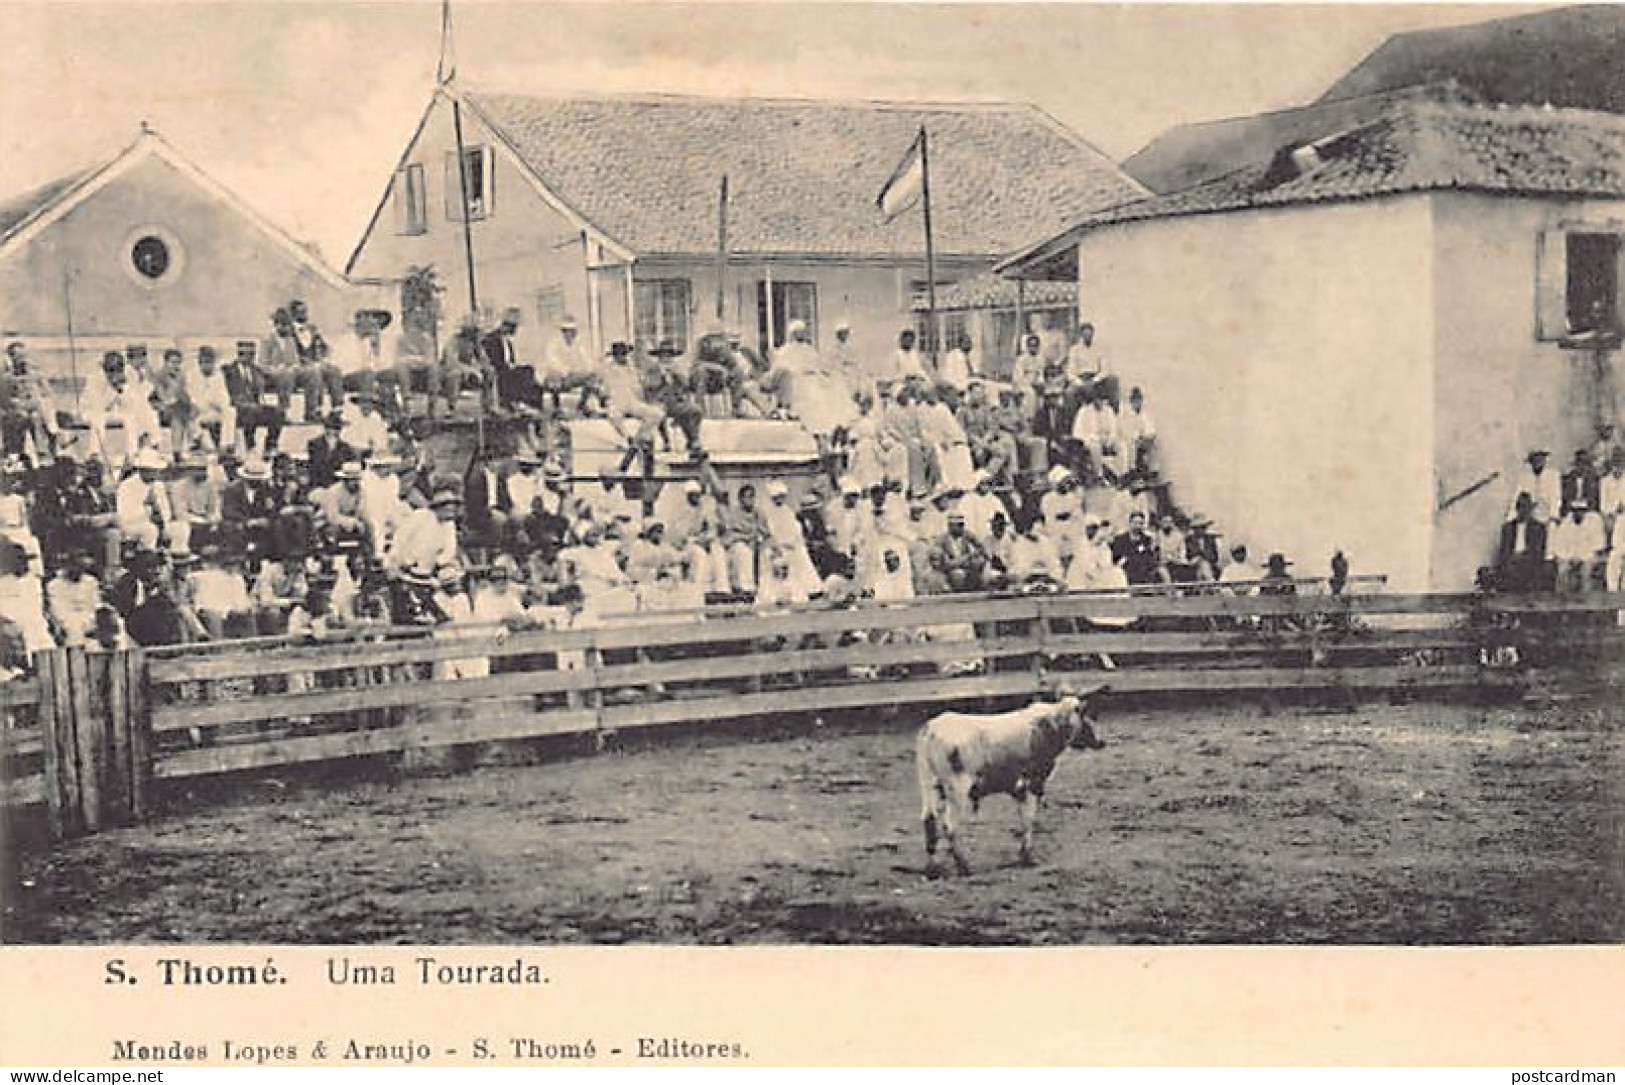 SAO TOME - Uma Tourada - Bullfight - Publ. Mendes. - Sao Tome And Principe